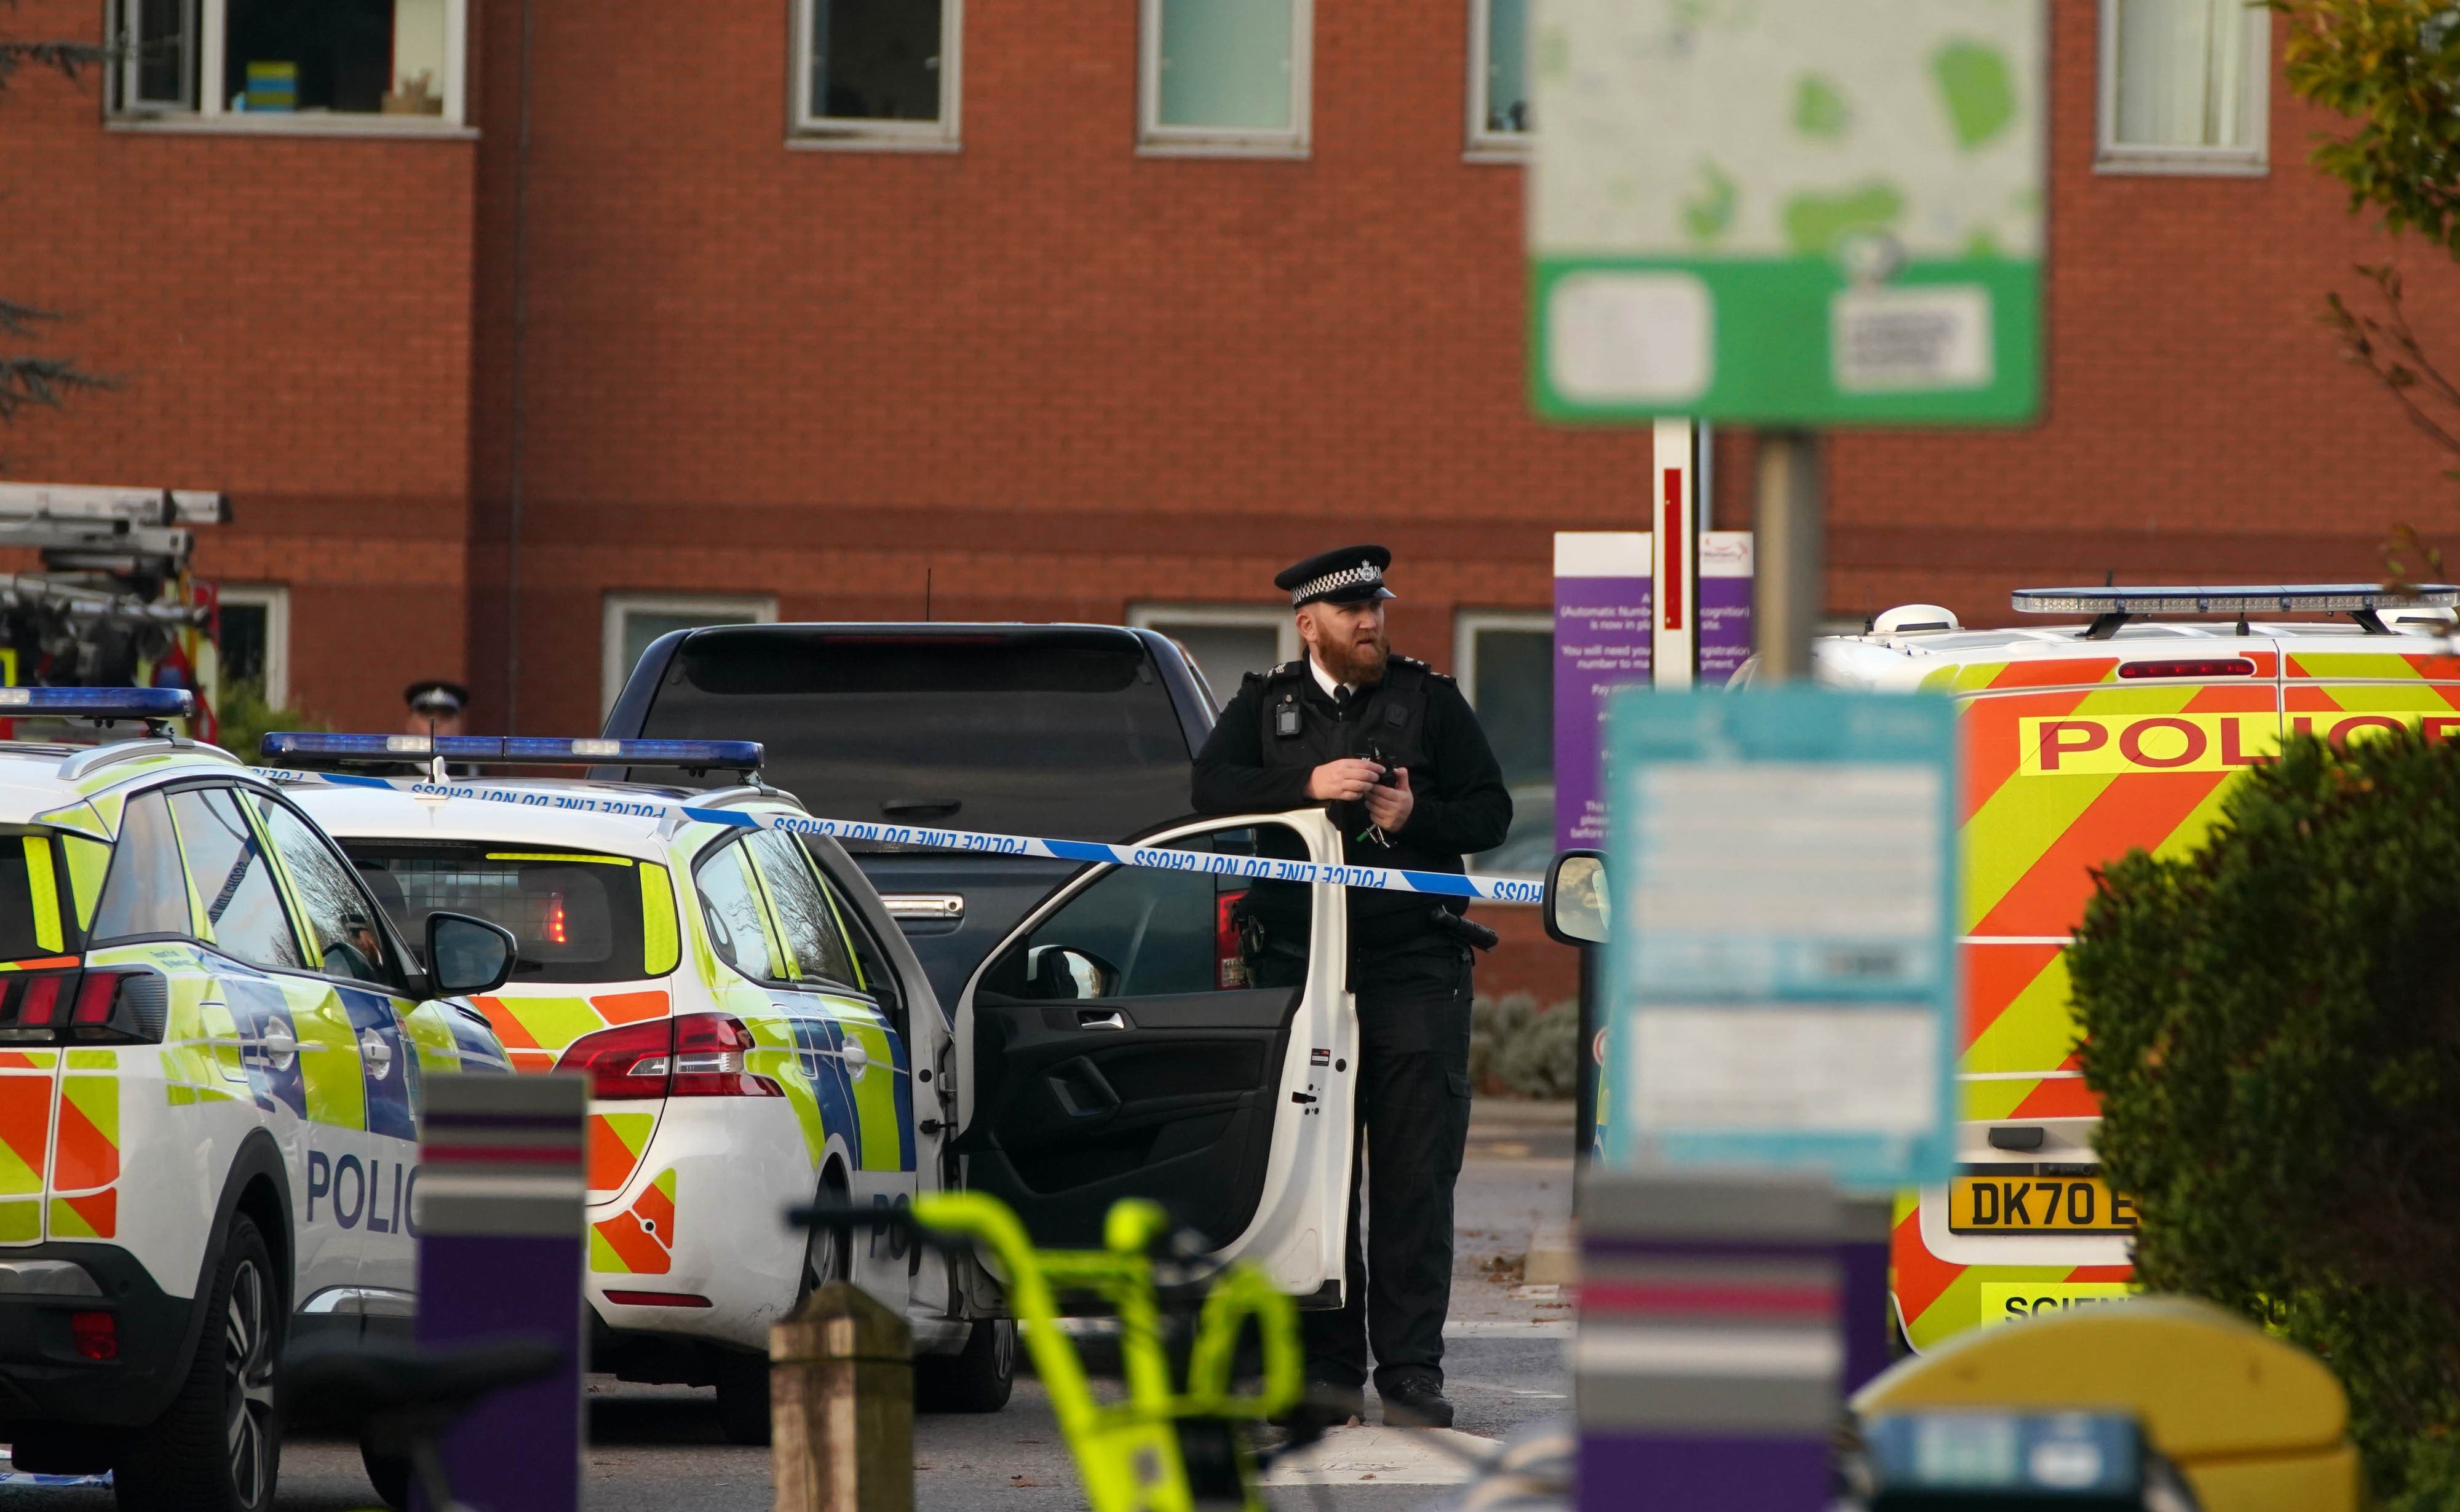 La explosión en un coche en Liverpool fue un ataque terrorista